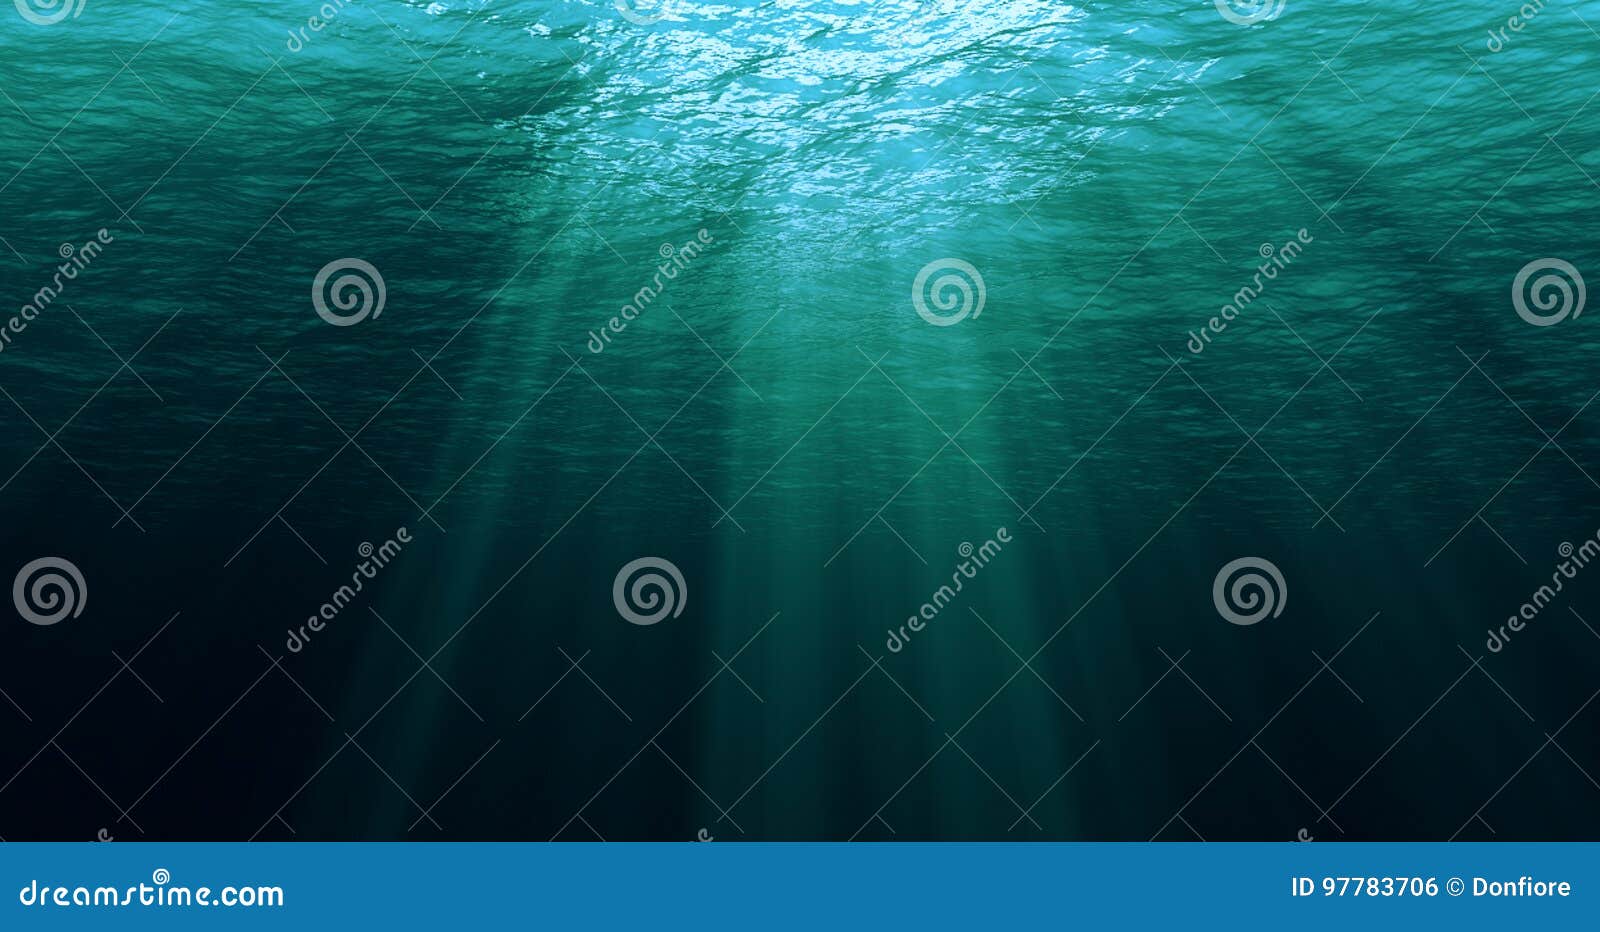 deep blue caribbean ocean waves from underwater background